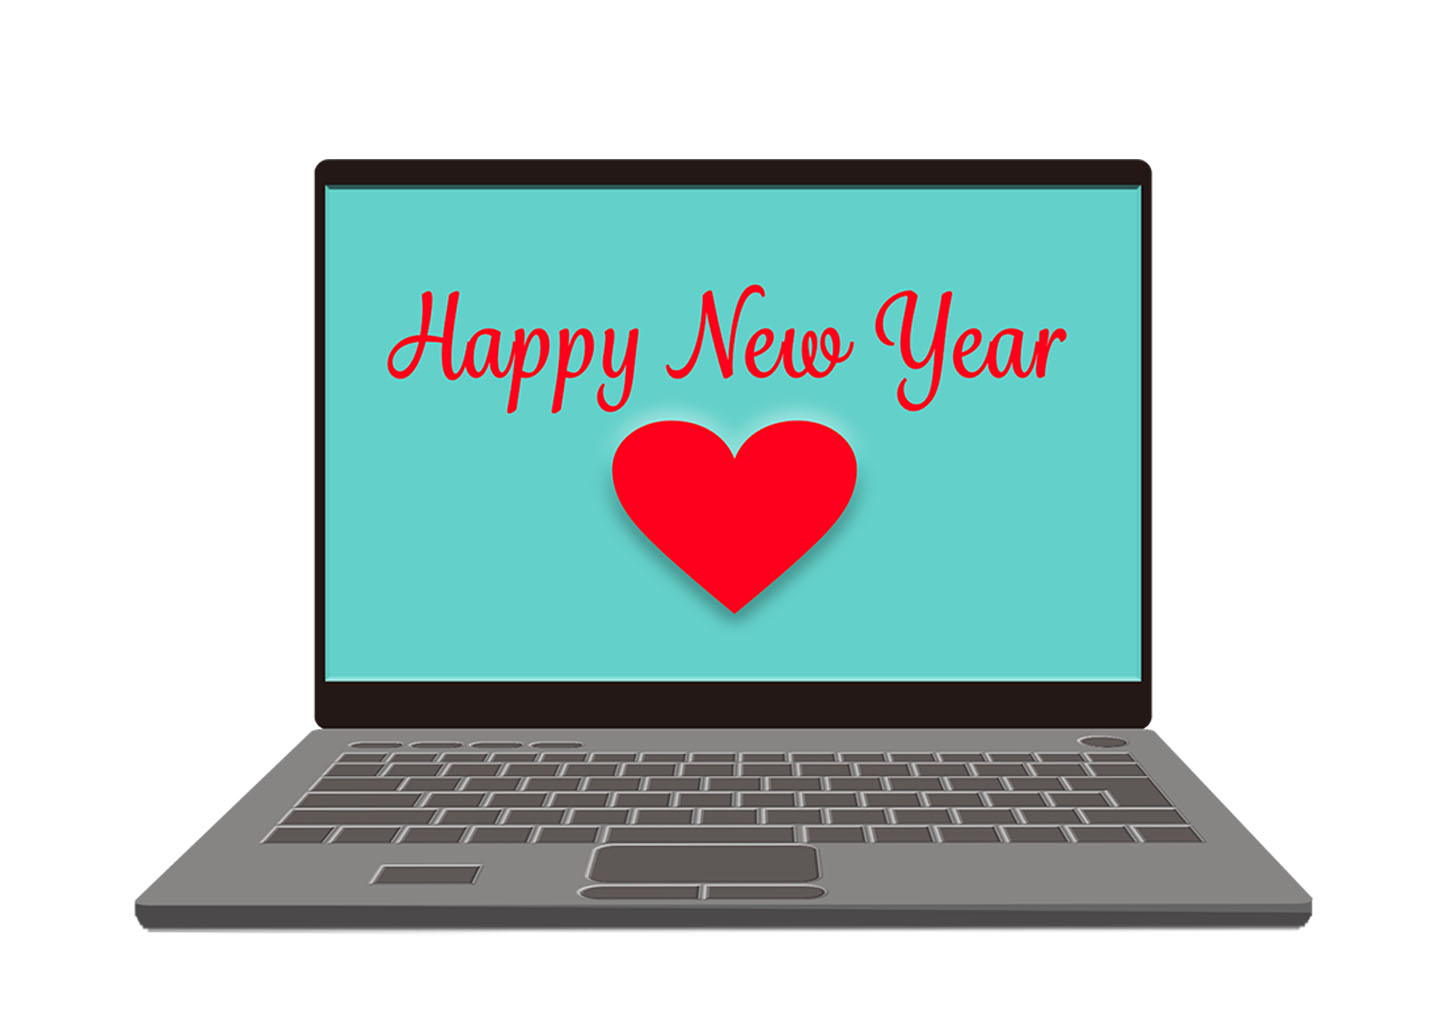 happy new yearと表示されたノートパソコンのイラスト